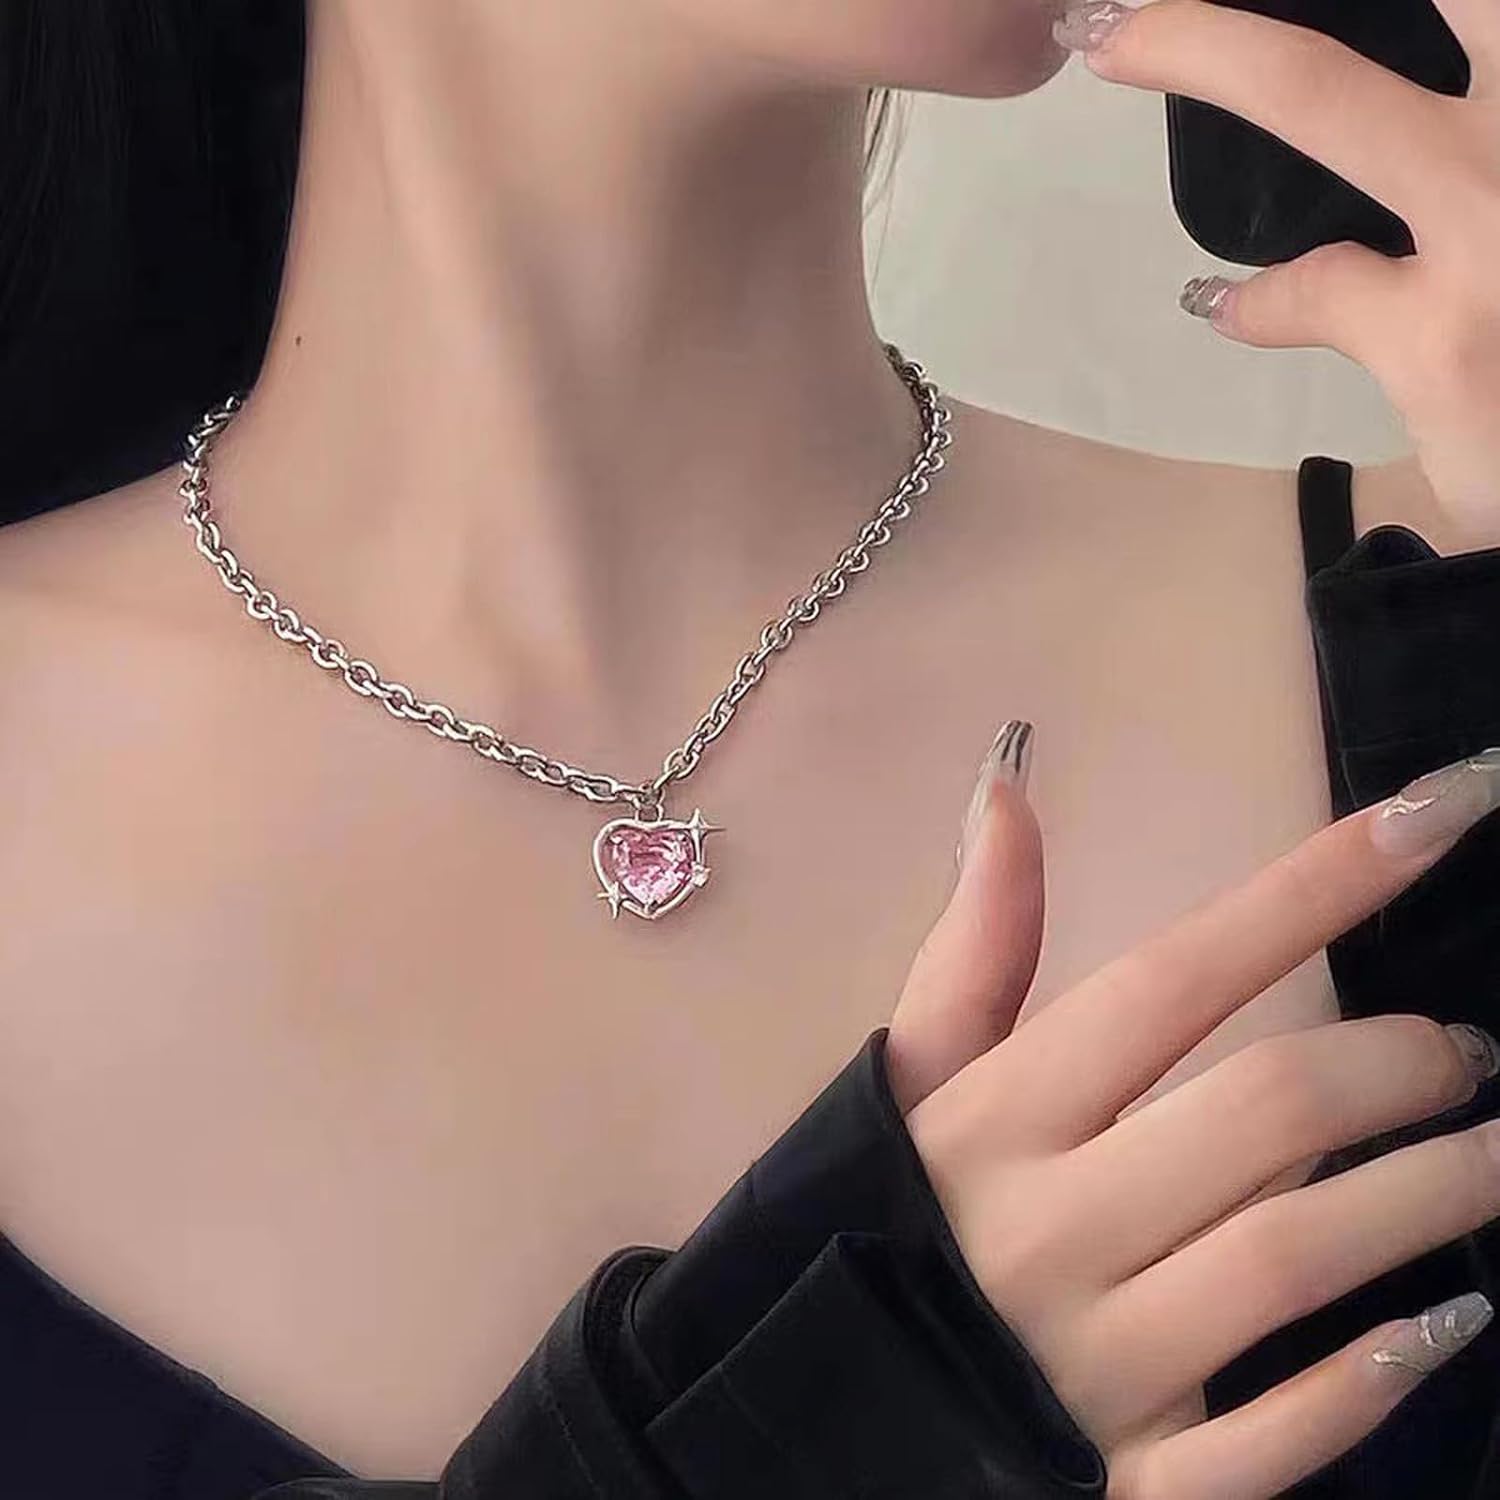 suofrun Hot Pink Love Heart Earrings  Necklace Jewelry Set For Girls Women Crystal Alloy Earrings Necklace Set Jewelry Gifts For Valentines Day Christmas Wife Girlfriend Her